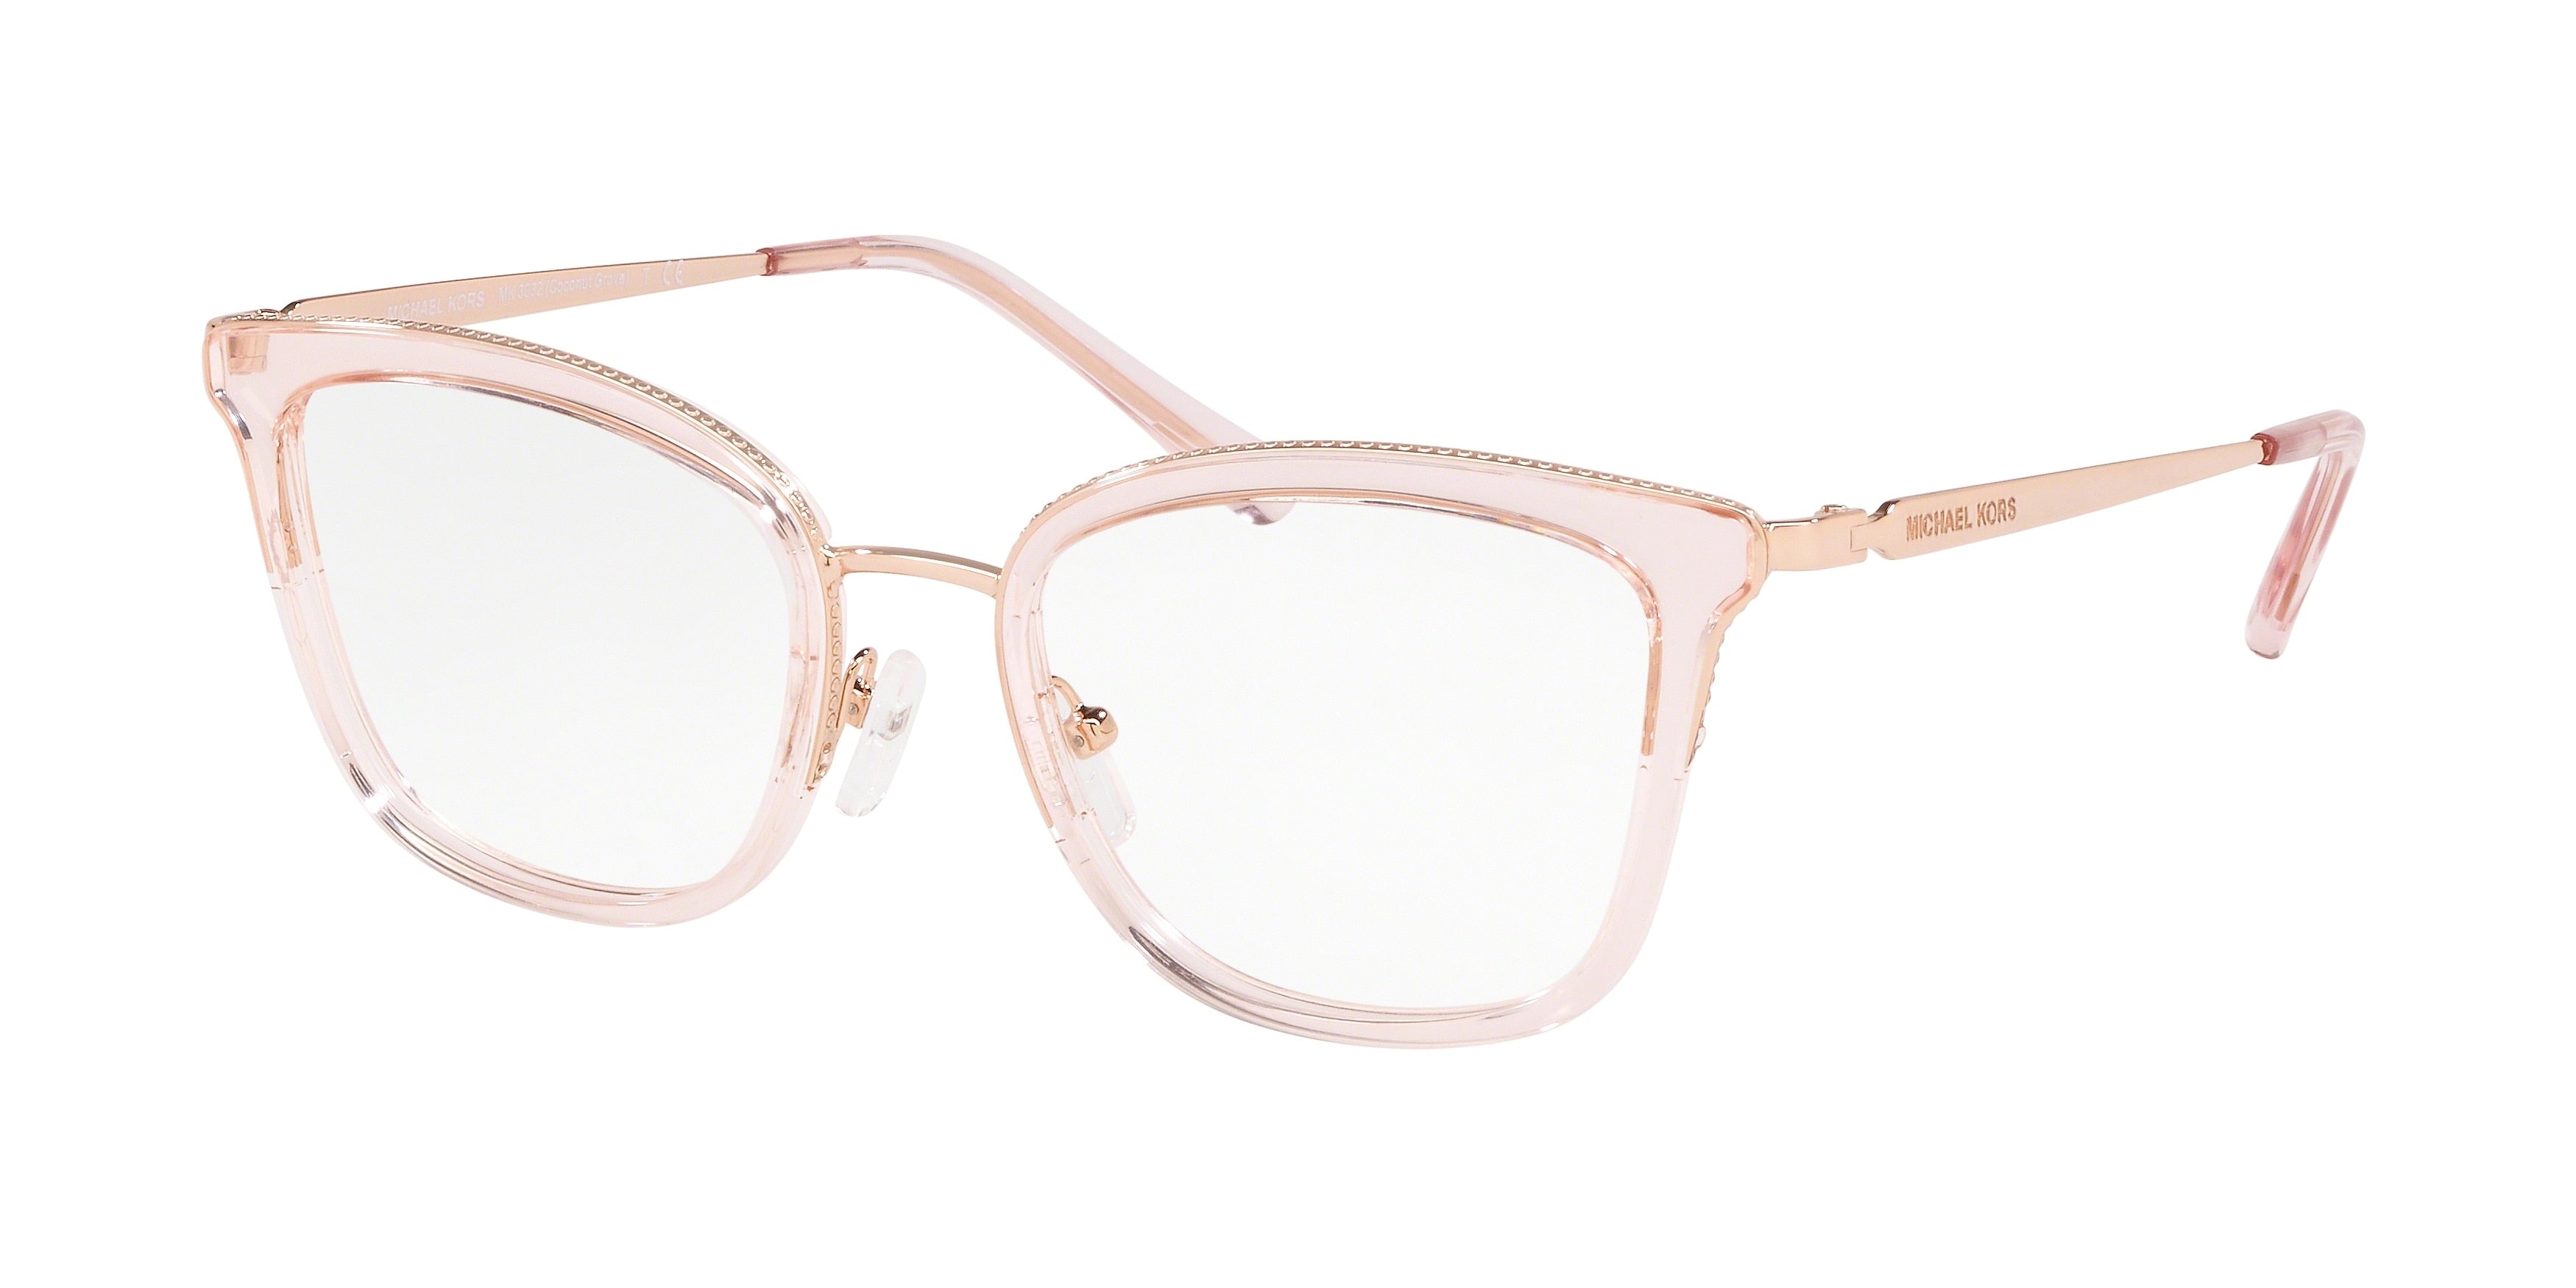 Michael Kors COCONUT GROVE MK3032 Square Eyeglasses  3417-Rose Gold/Pink Transparent 51-140-19 - Color Map Gold